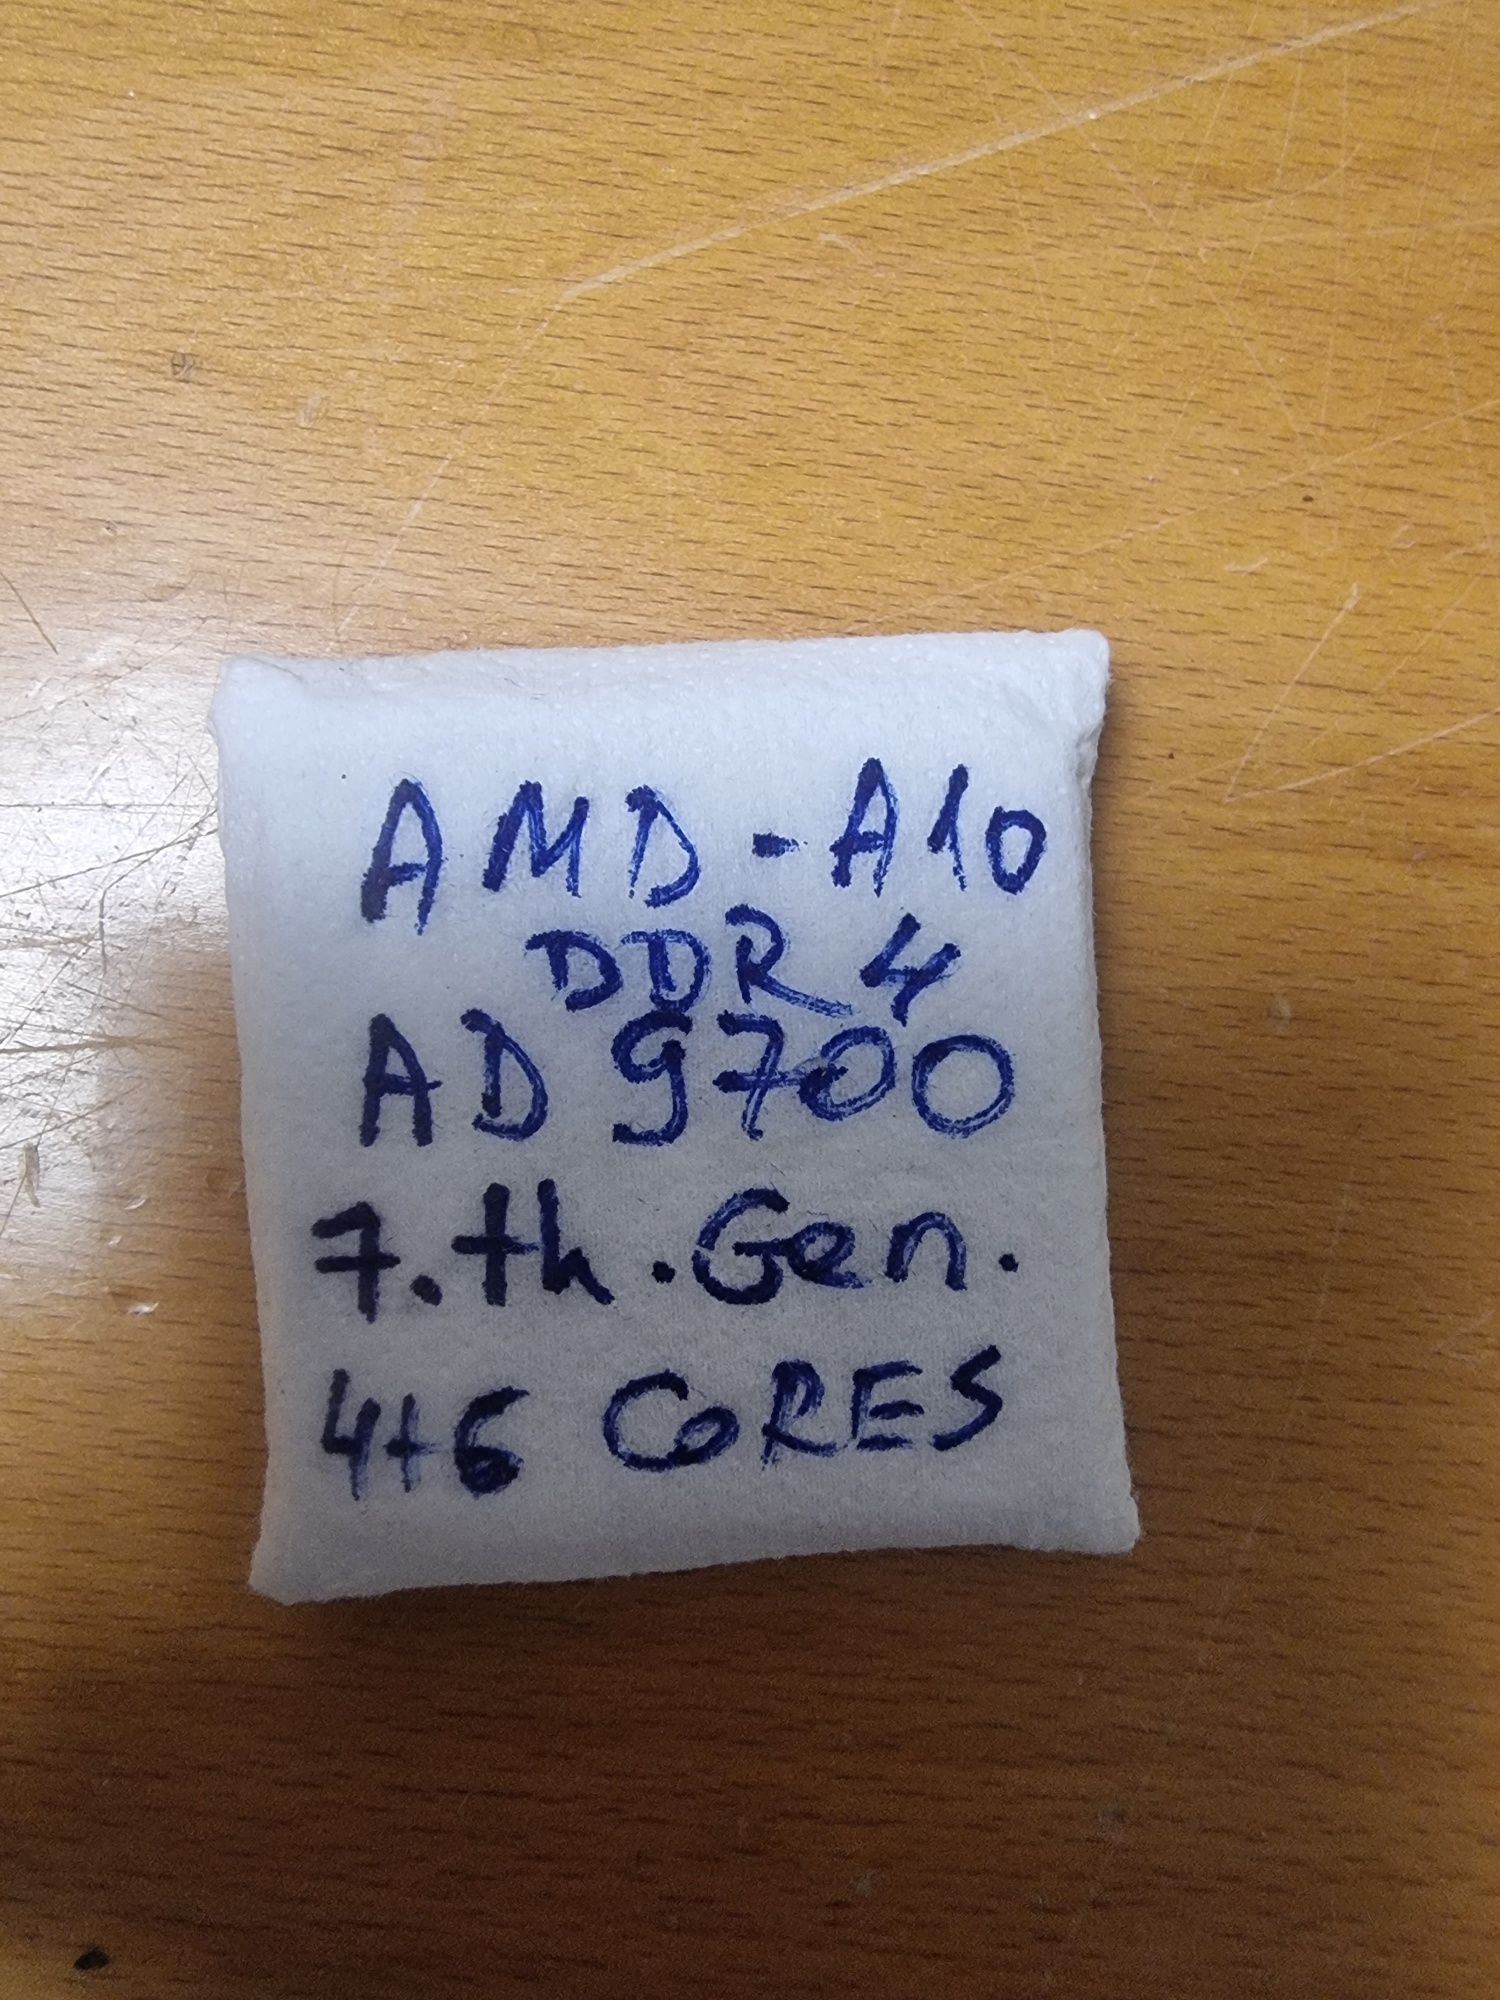 AMD A10 AD 9700-9600